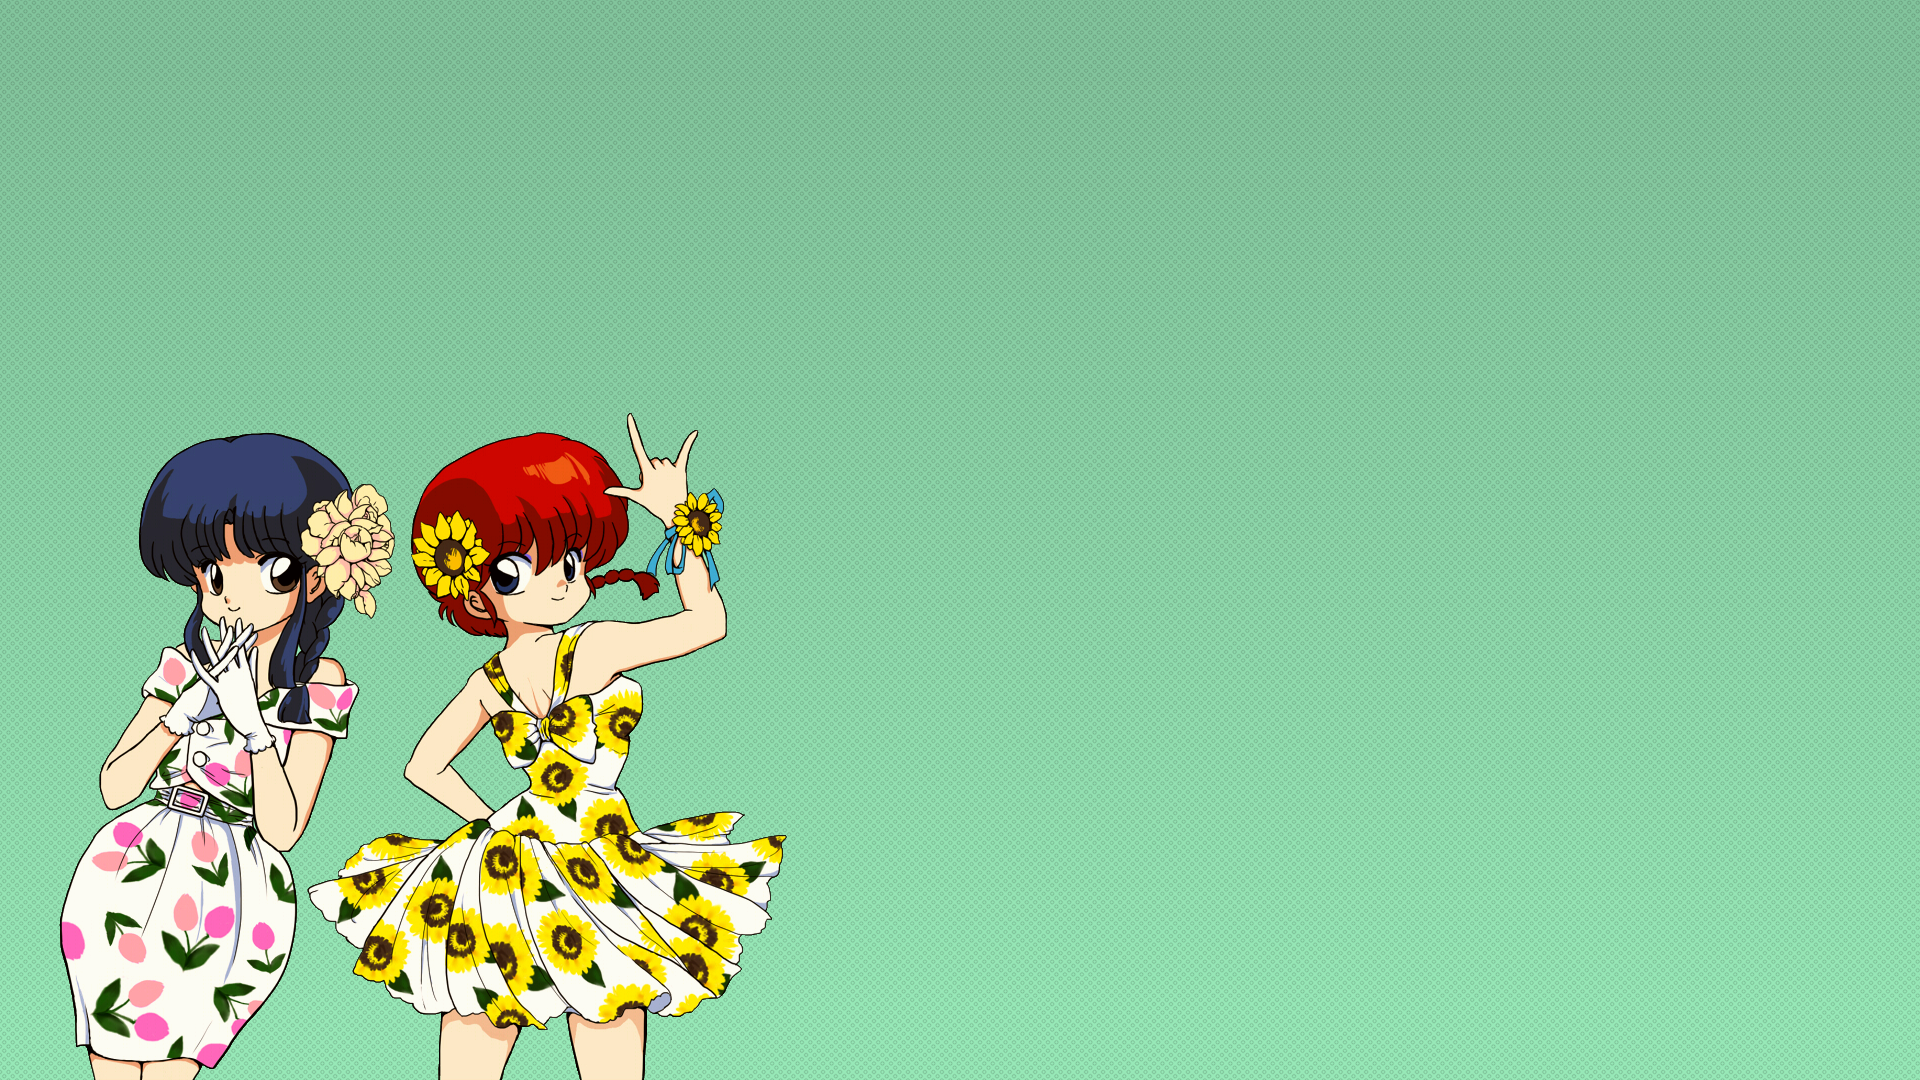 Anime Girls Anime Anime Couple Schoolgirl Skirt Dress Bangs Blunt Bangs Long Hair Flower In Hair Red 1920x1080